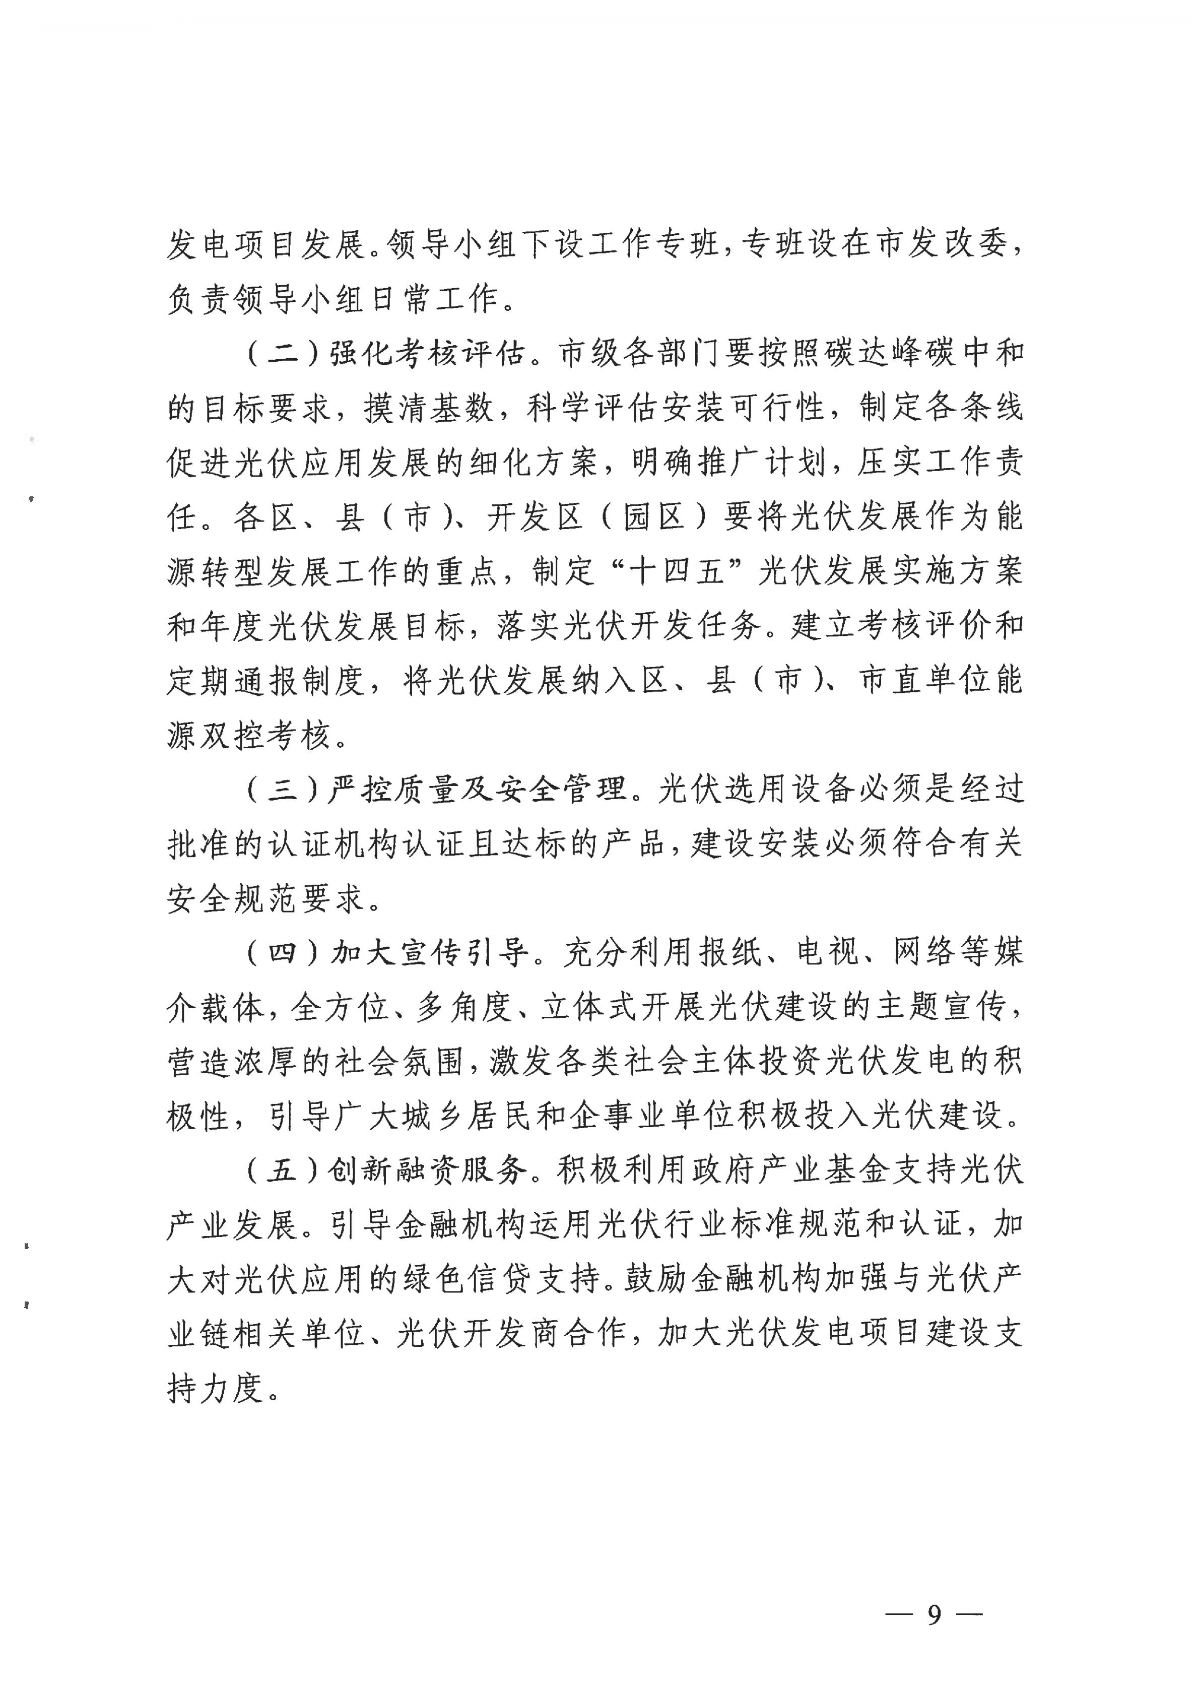 1128关于印发《关于进一步加快杭州市光伏发电项目建设的实施意见》的通知_08.jpg